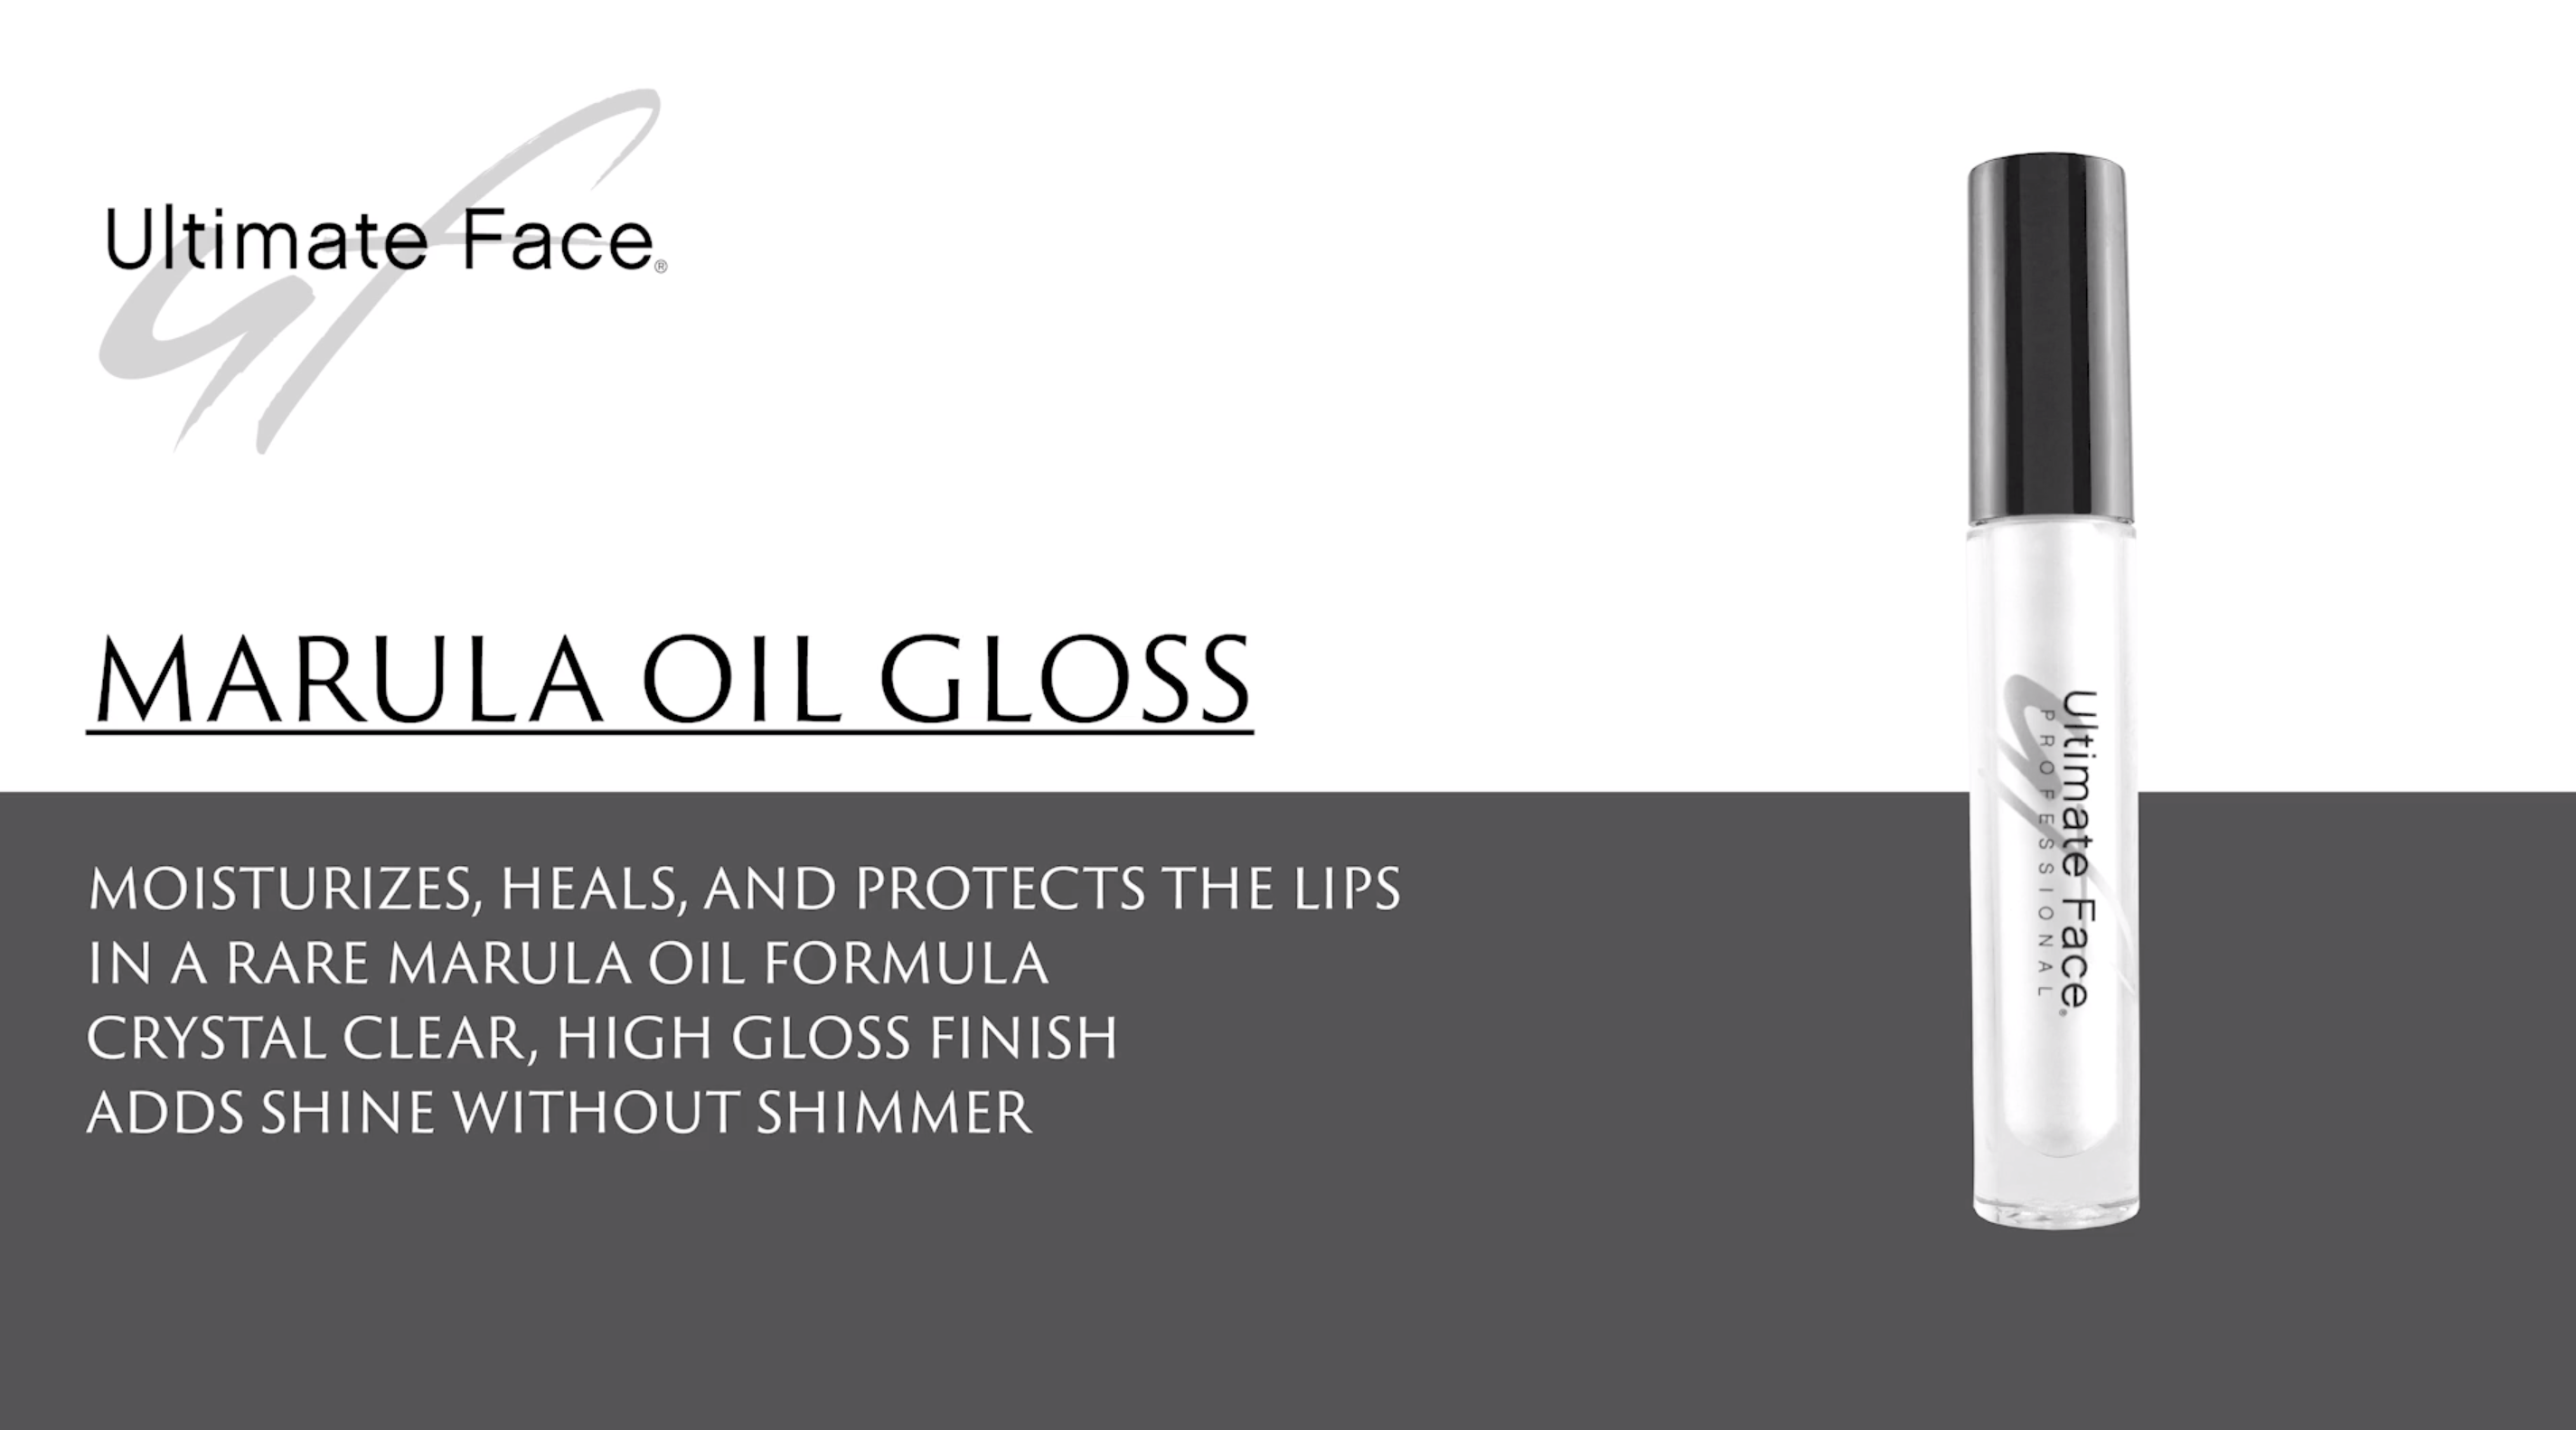 Ultimate Face Marula Oil Lip Gloss